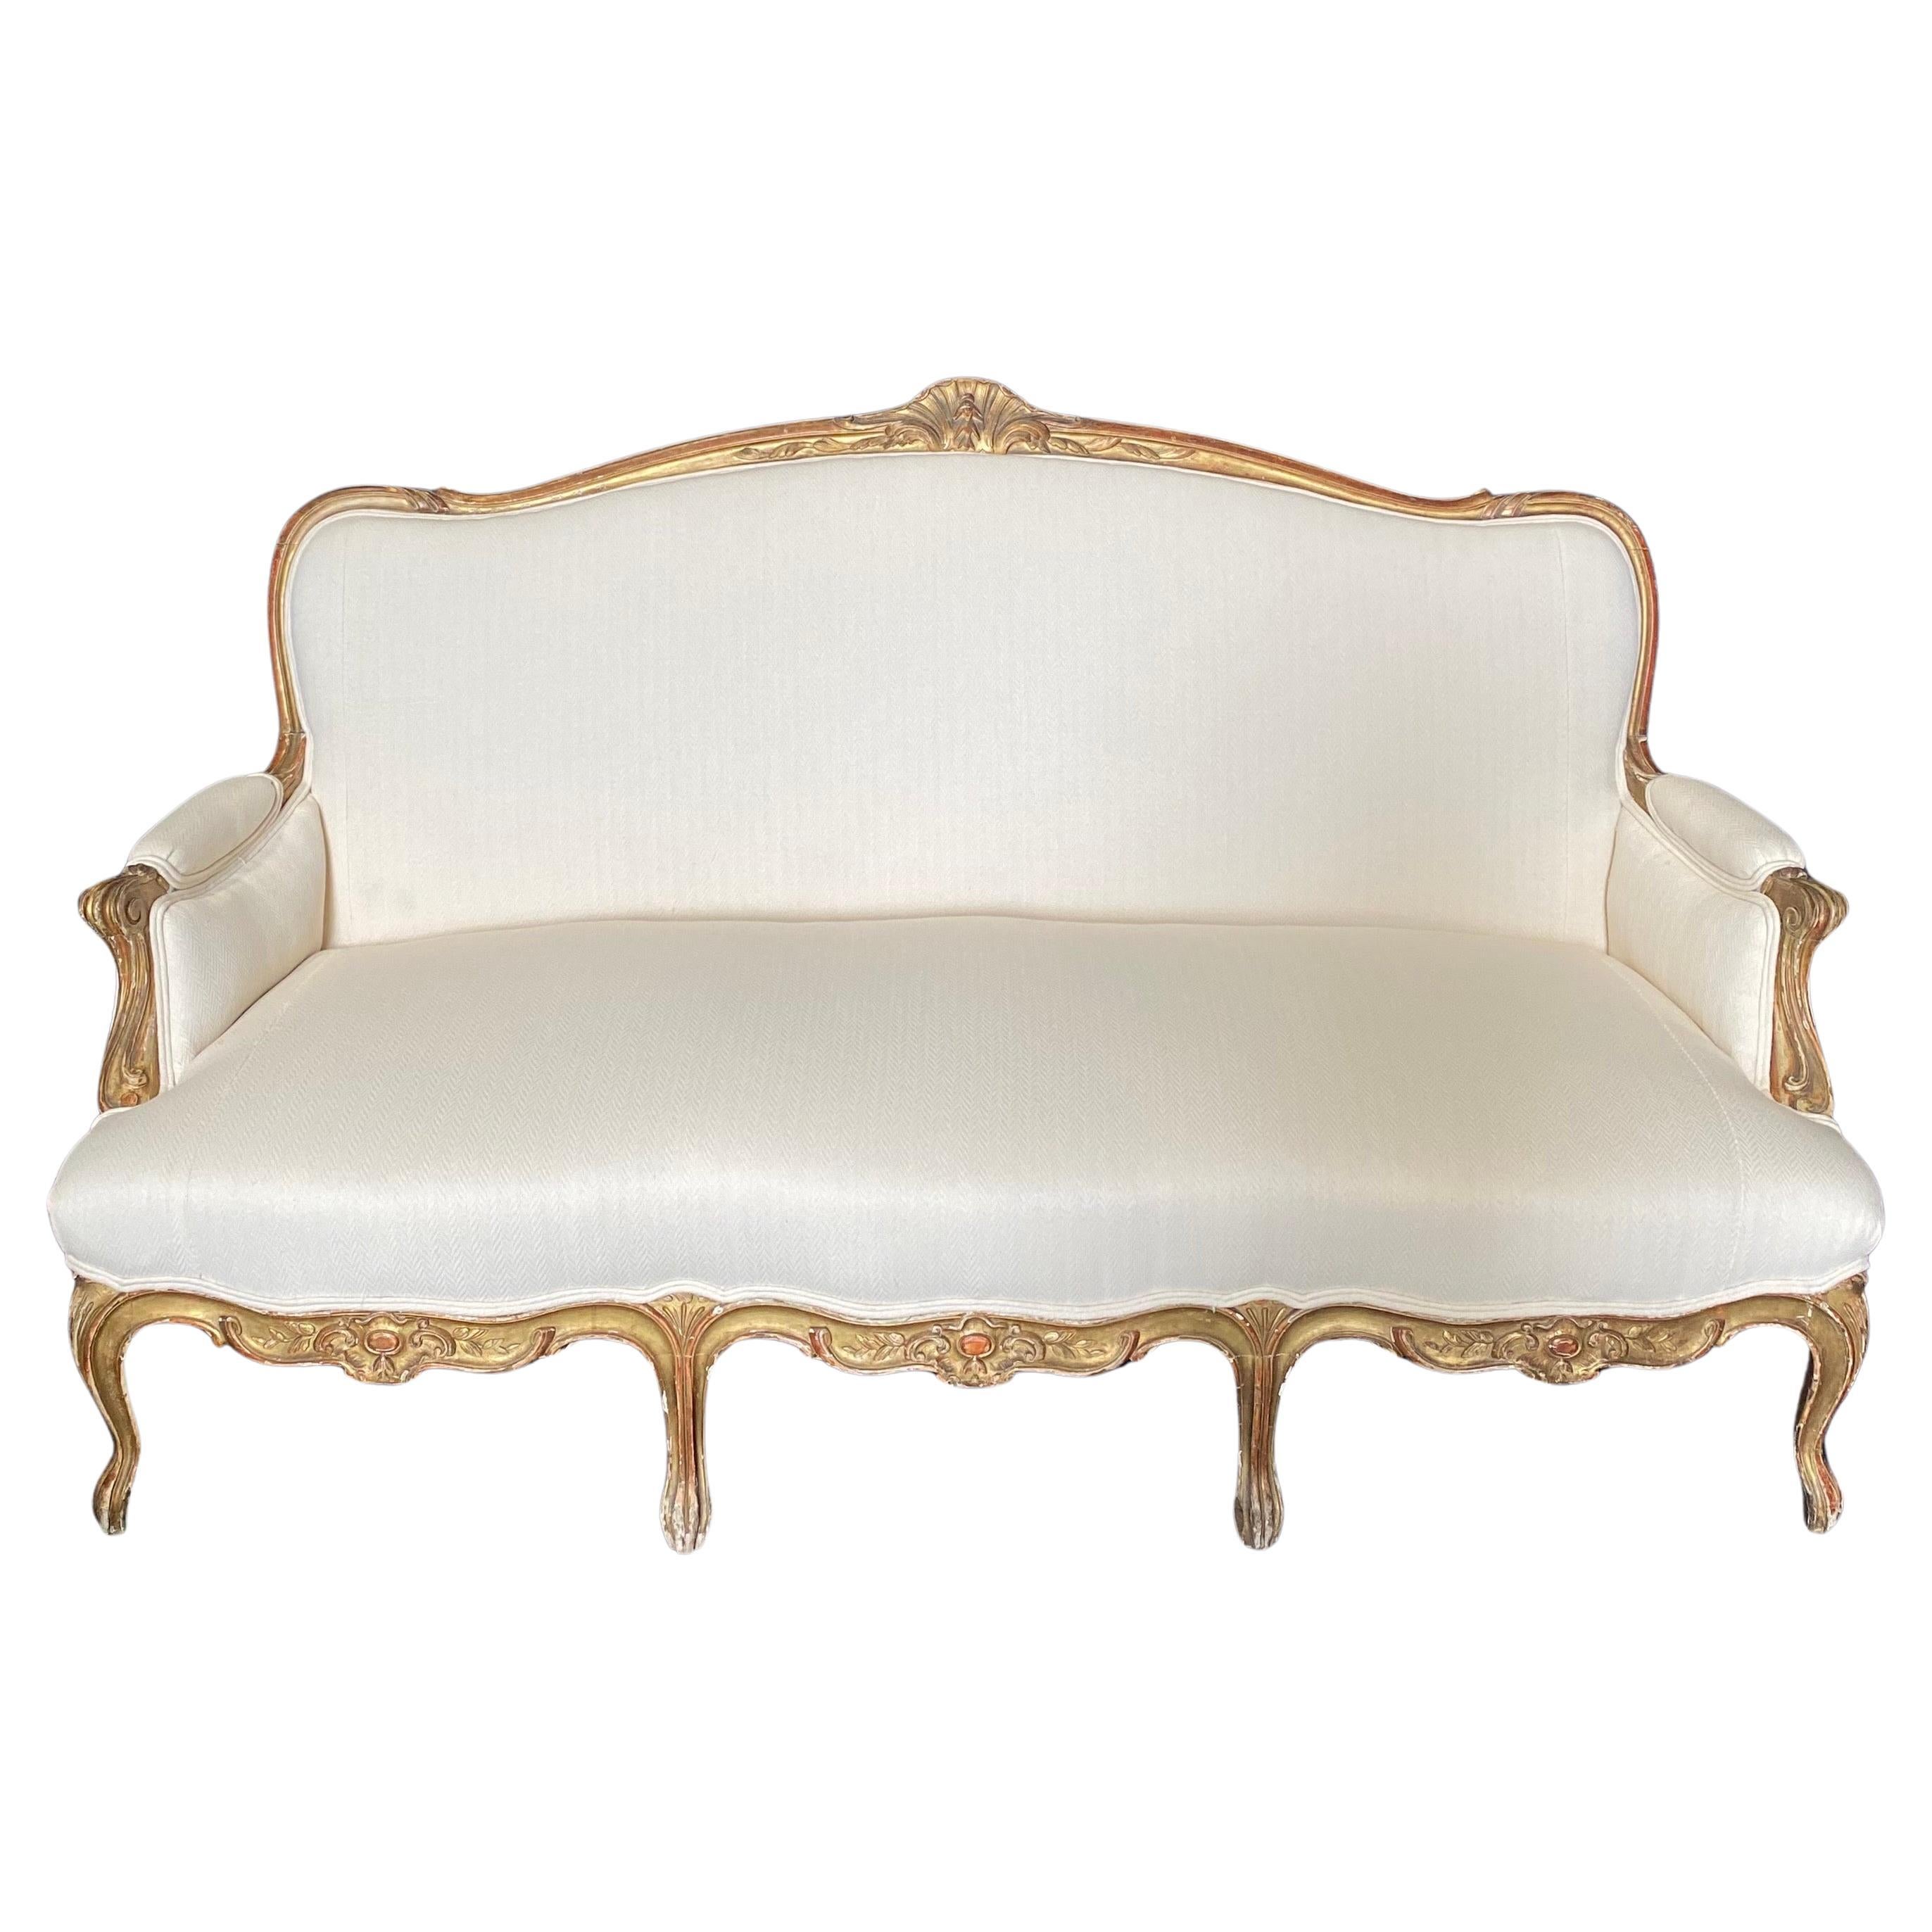 Superbe canapé provençal français Louis XV du 19ème siècle sculpté et doré